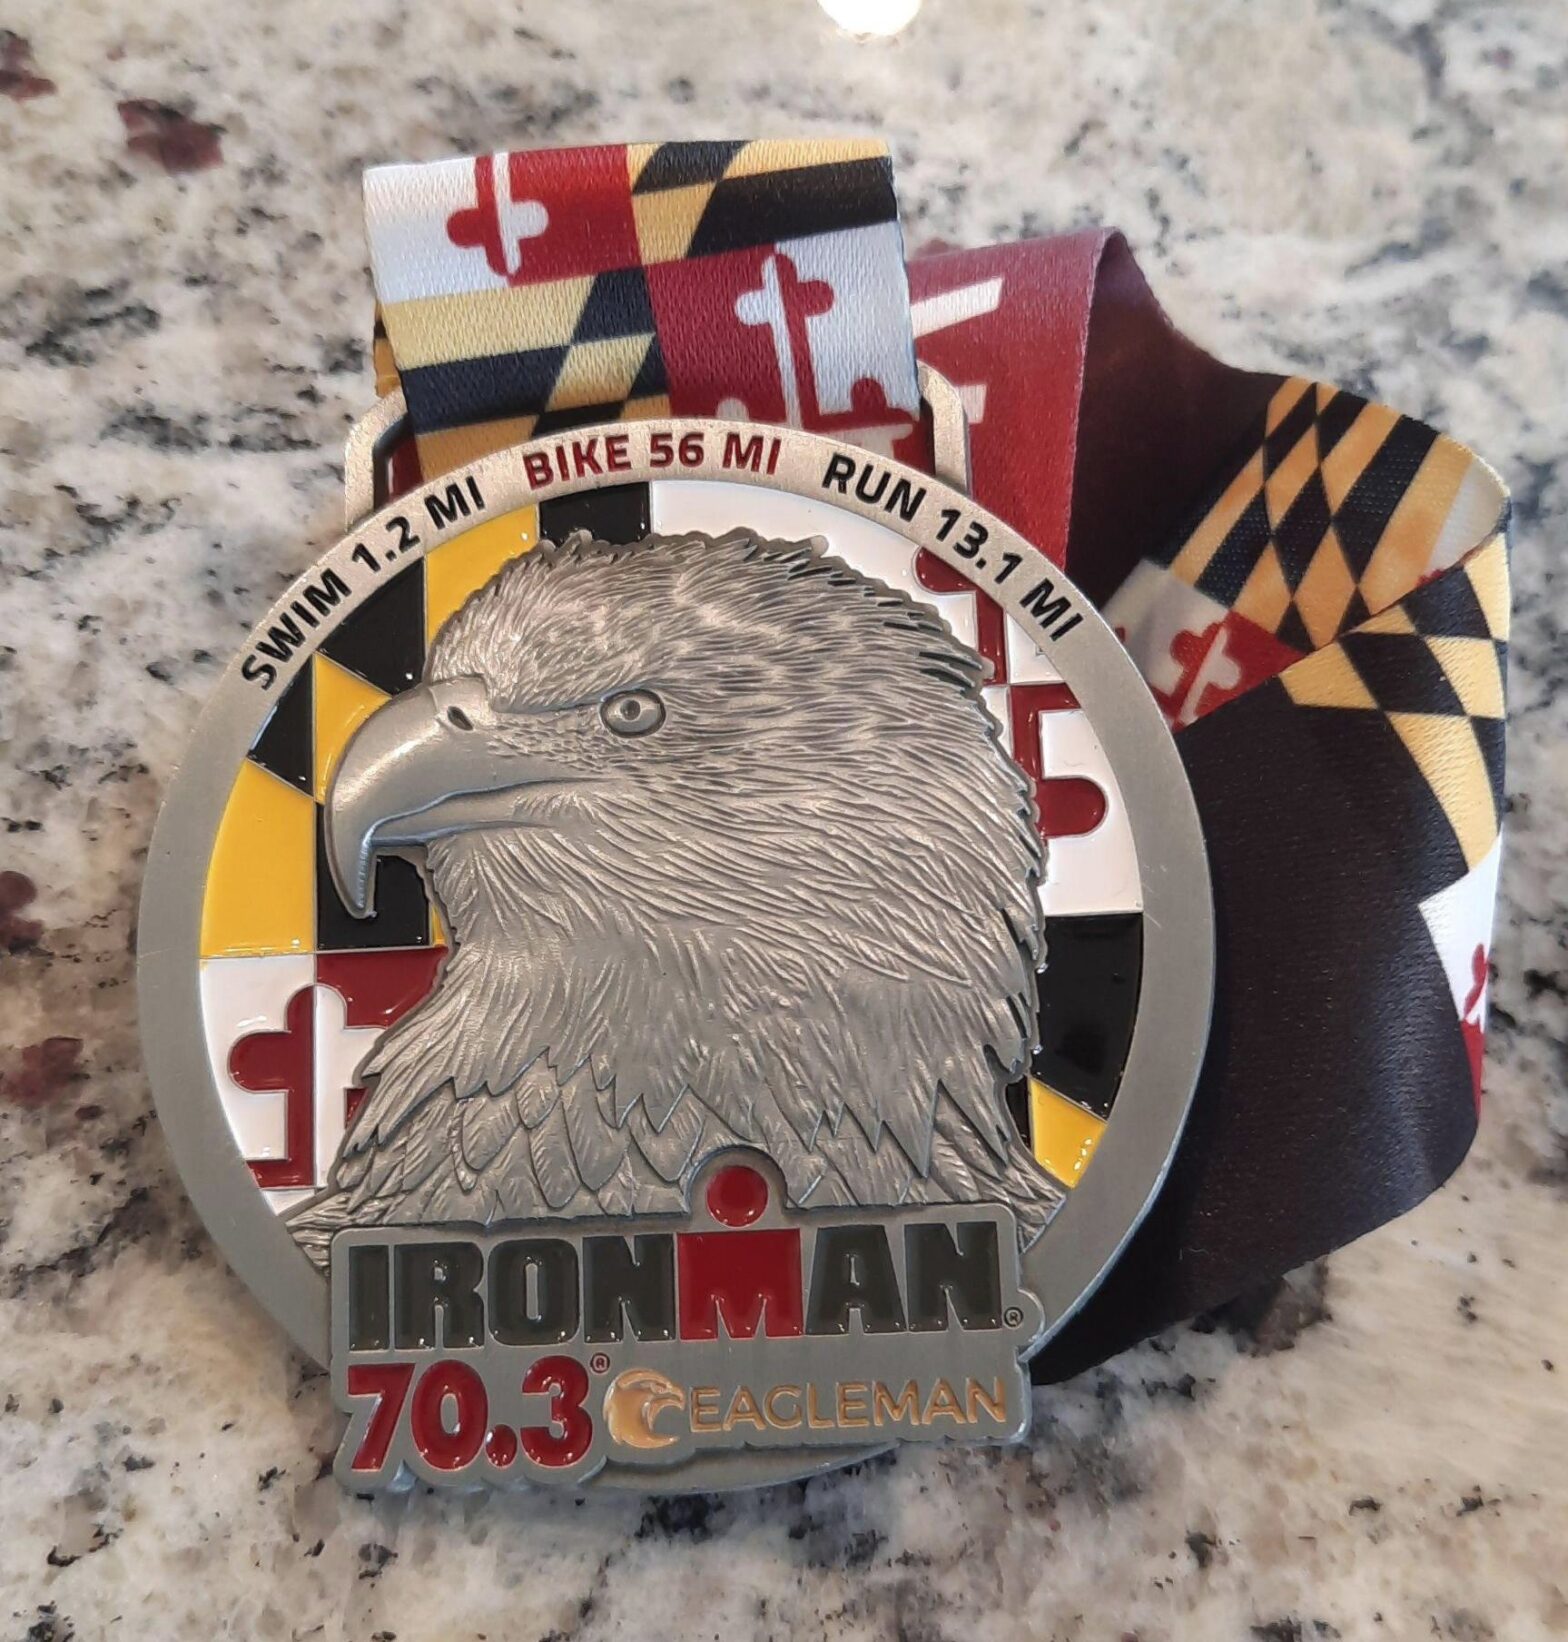 2023 Eagleman finisher's medal